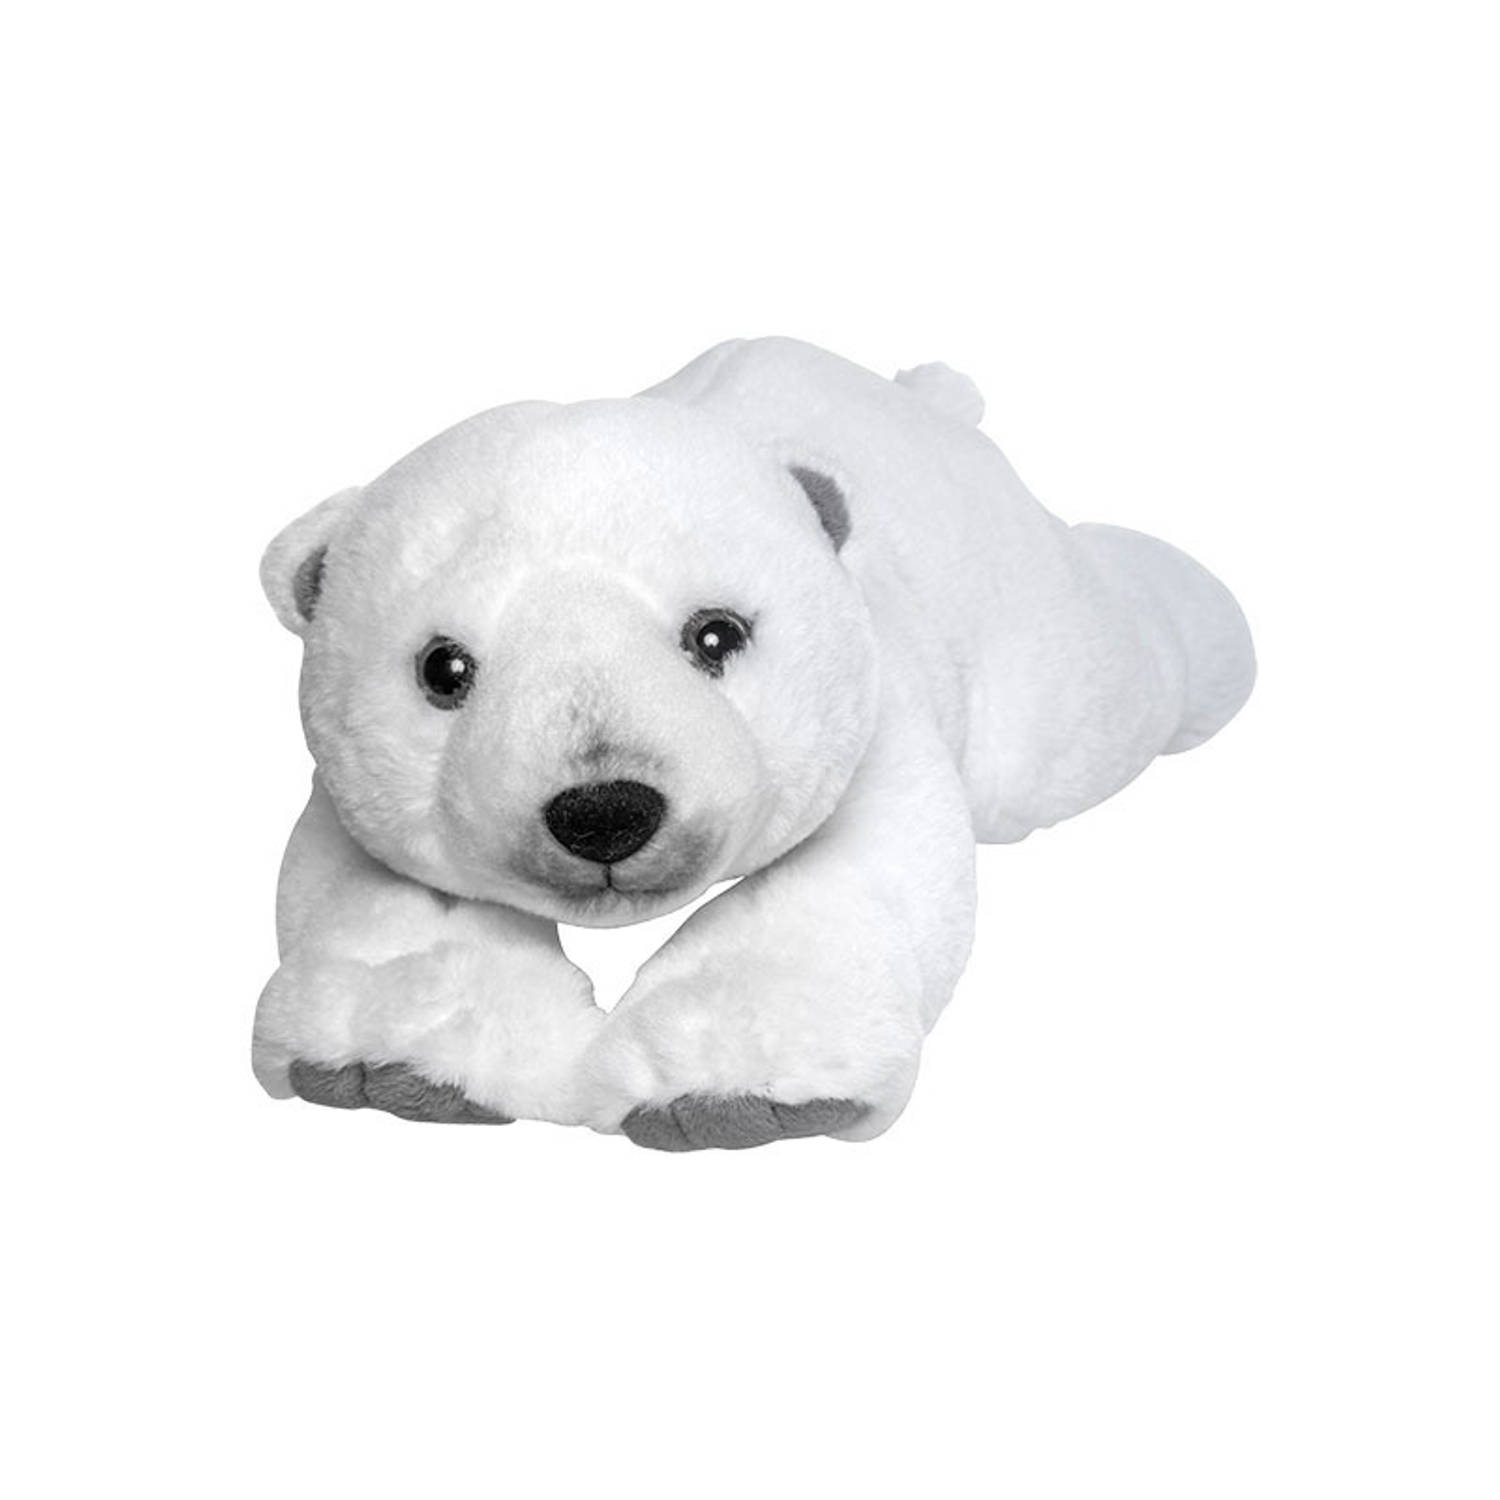 Pluche liggende IJsbeer knuffel van 40 cm - Dieren speelgoed knuffels cadeau - Pooldieren